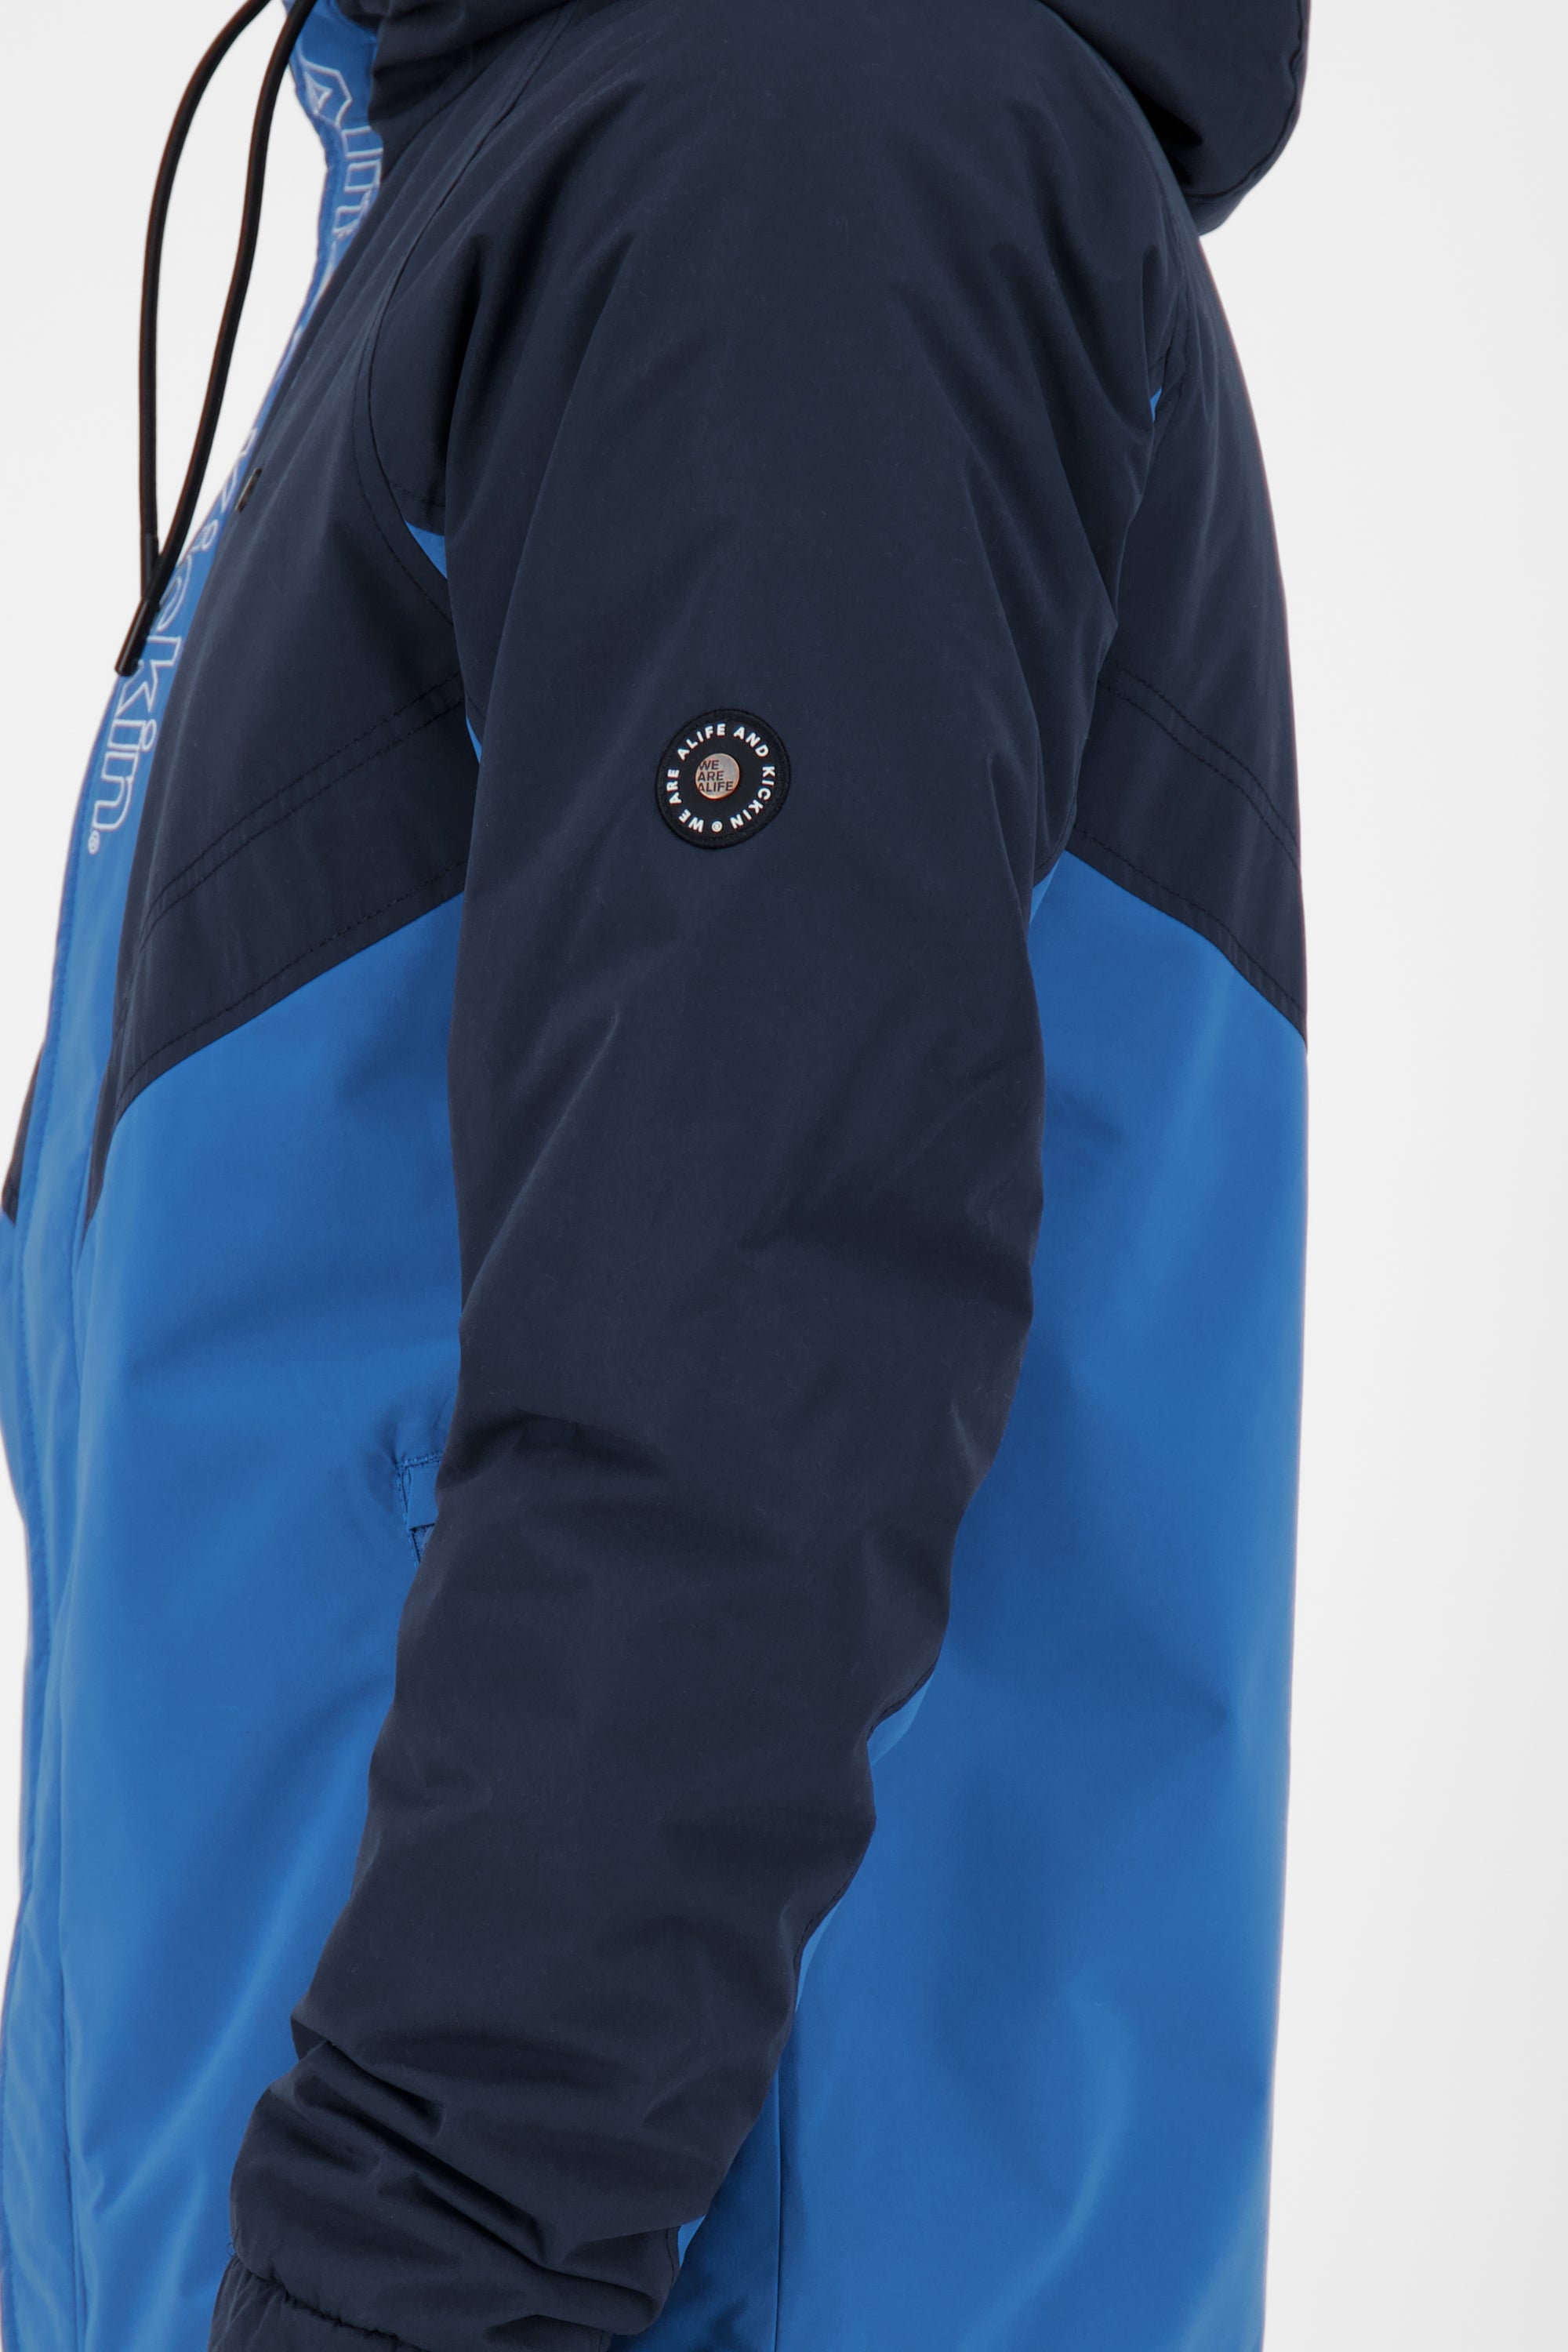 JackAK A - Herren Kurzjacke in sportlichem Design für jede Jahreszeit Blau